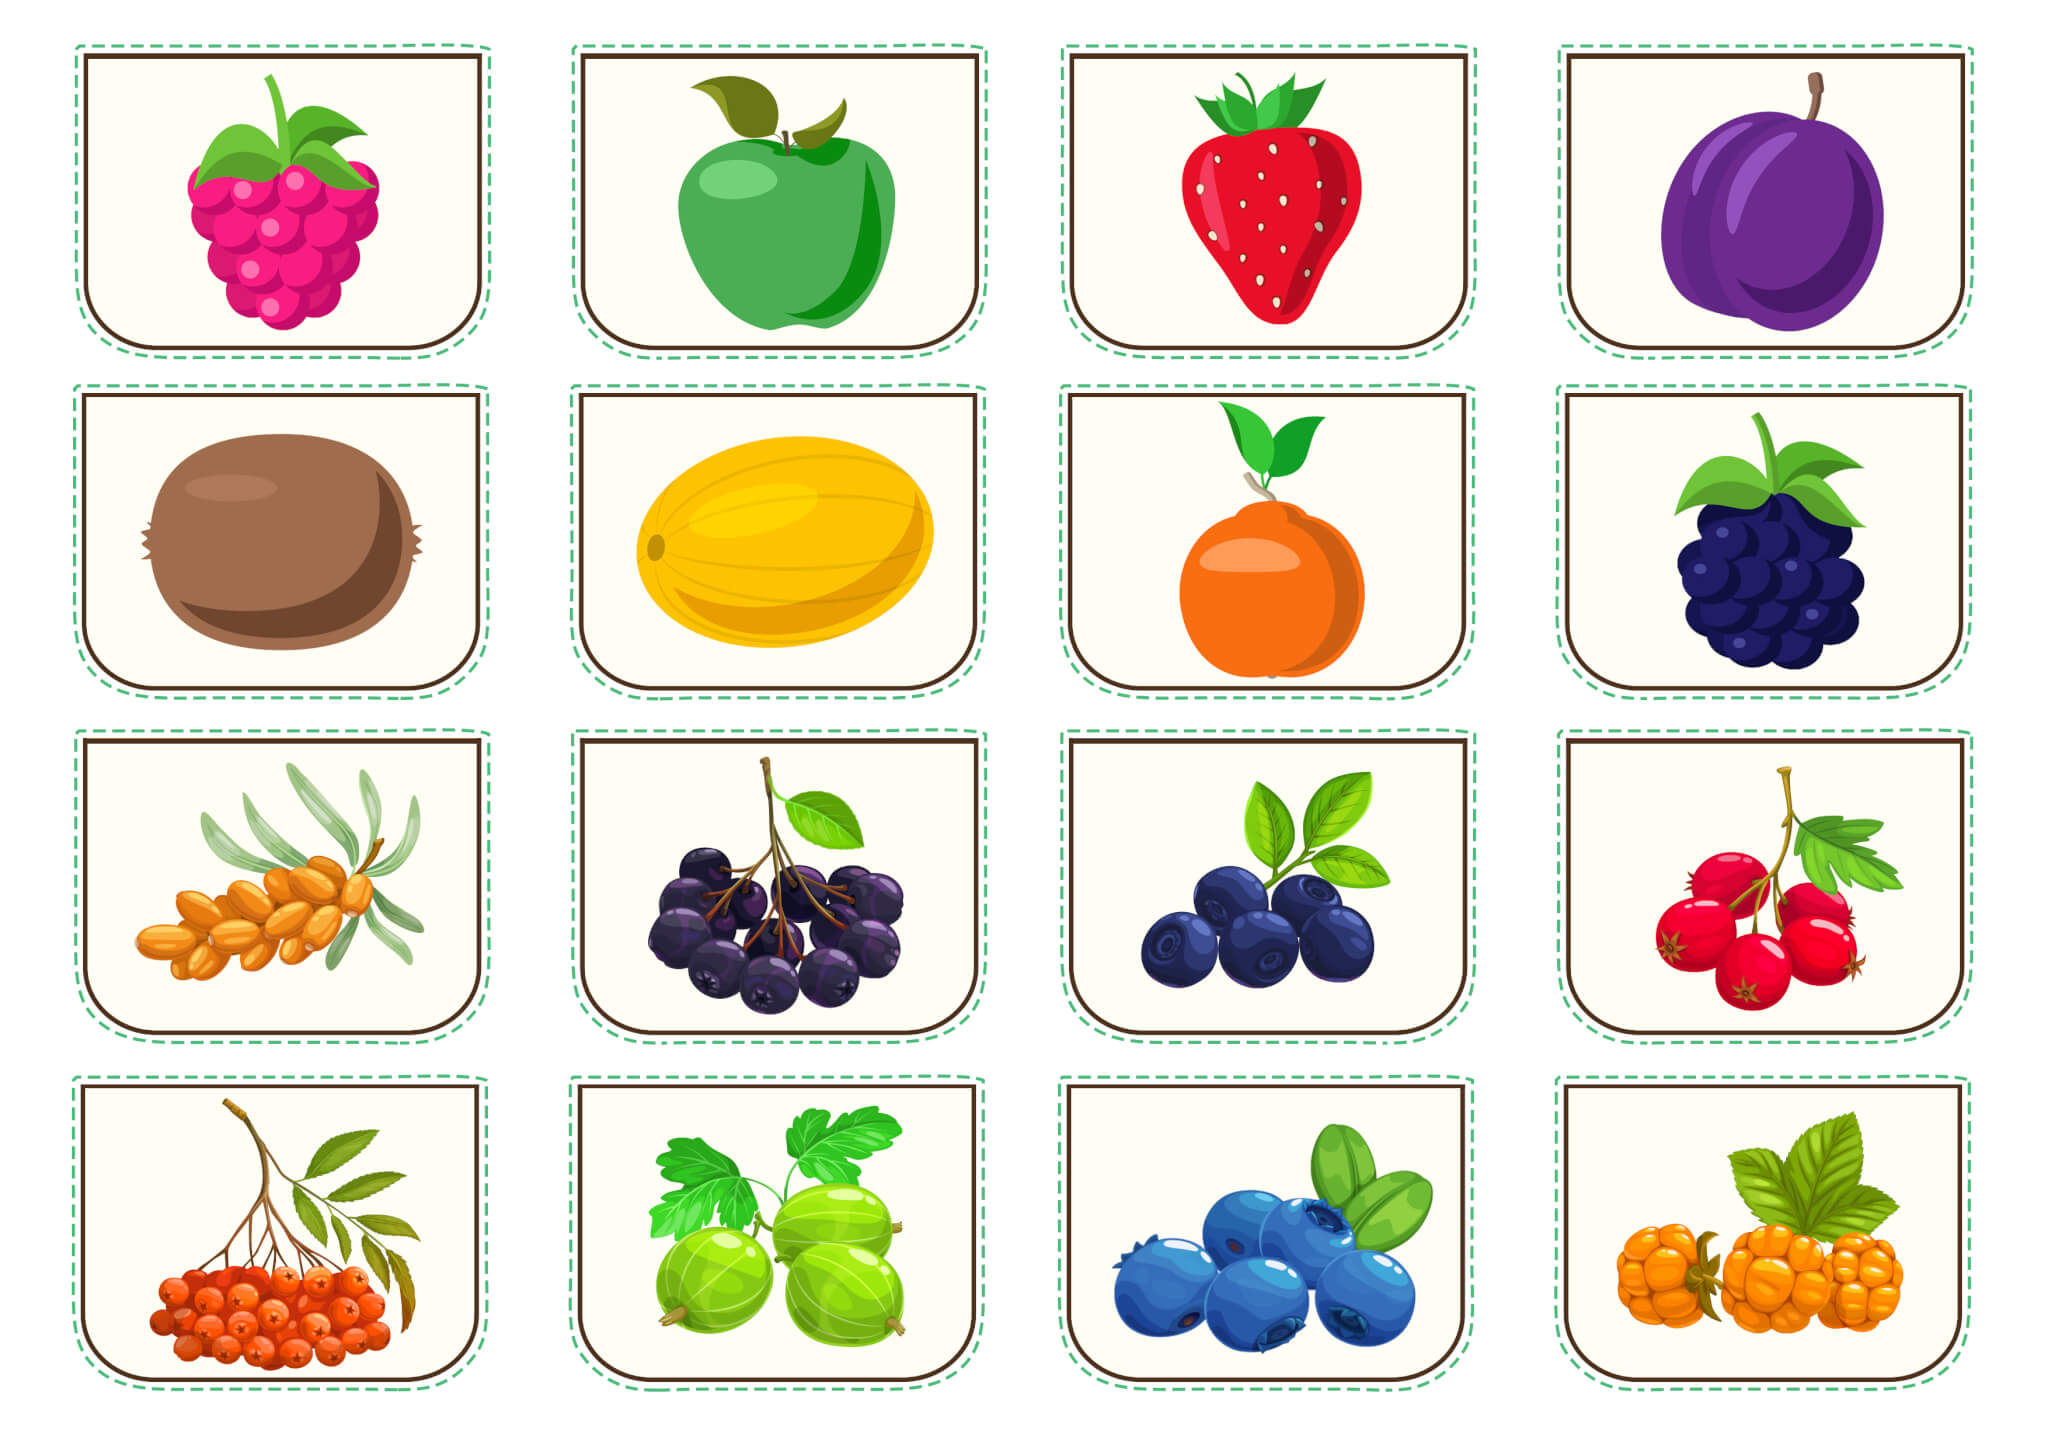 Дидактическая игра «Цвет фруктов и ягод» - Изображение 4